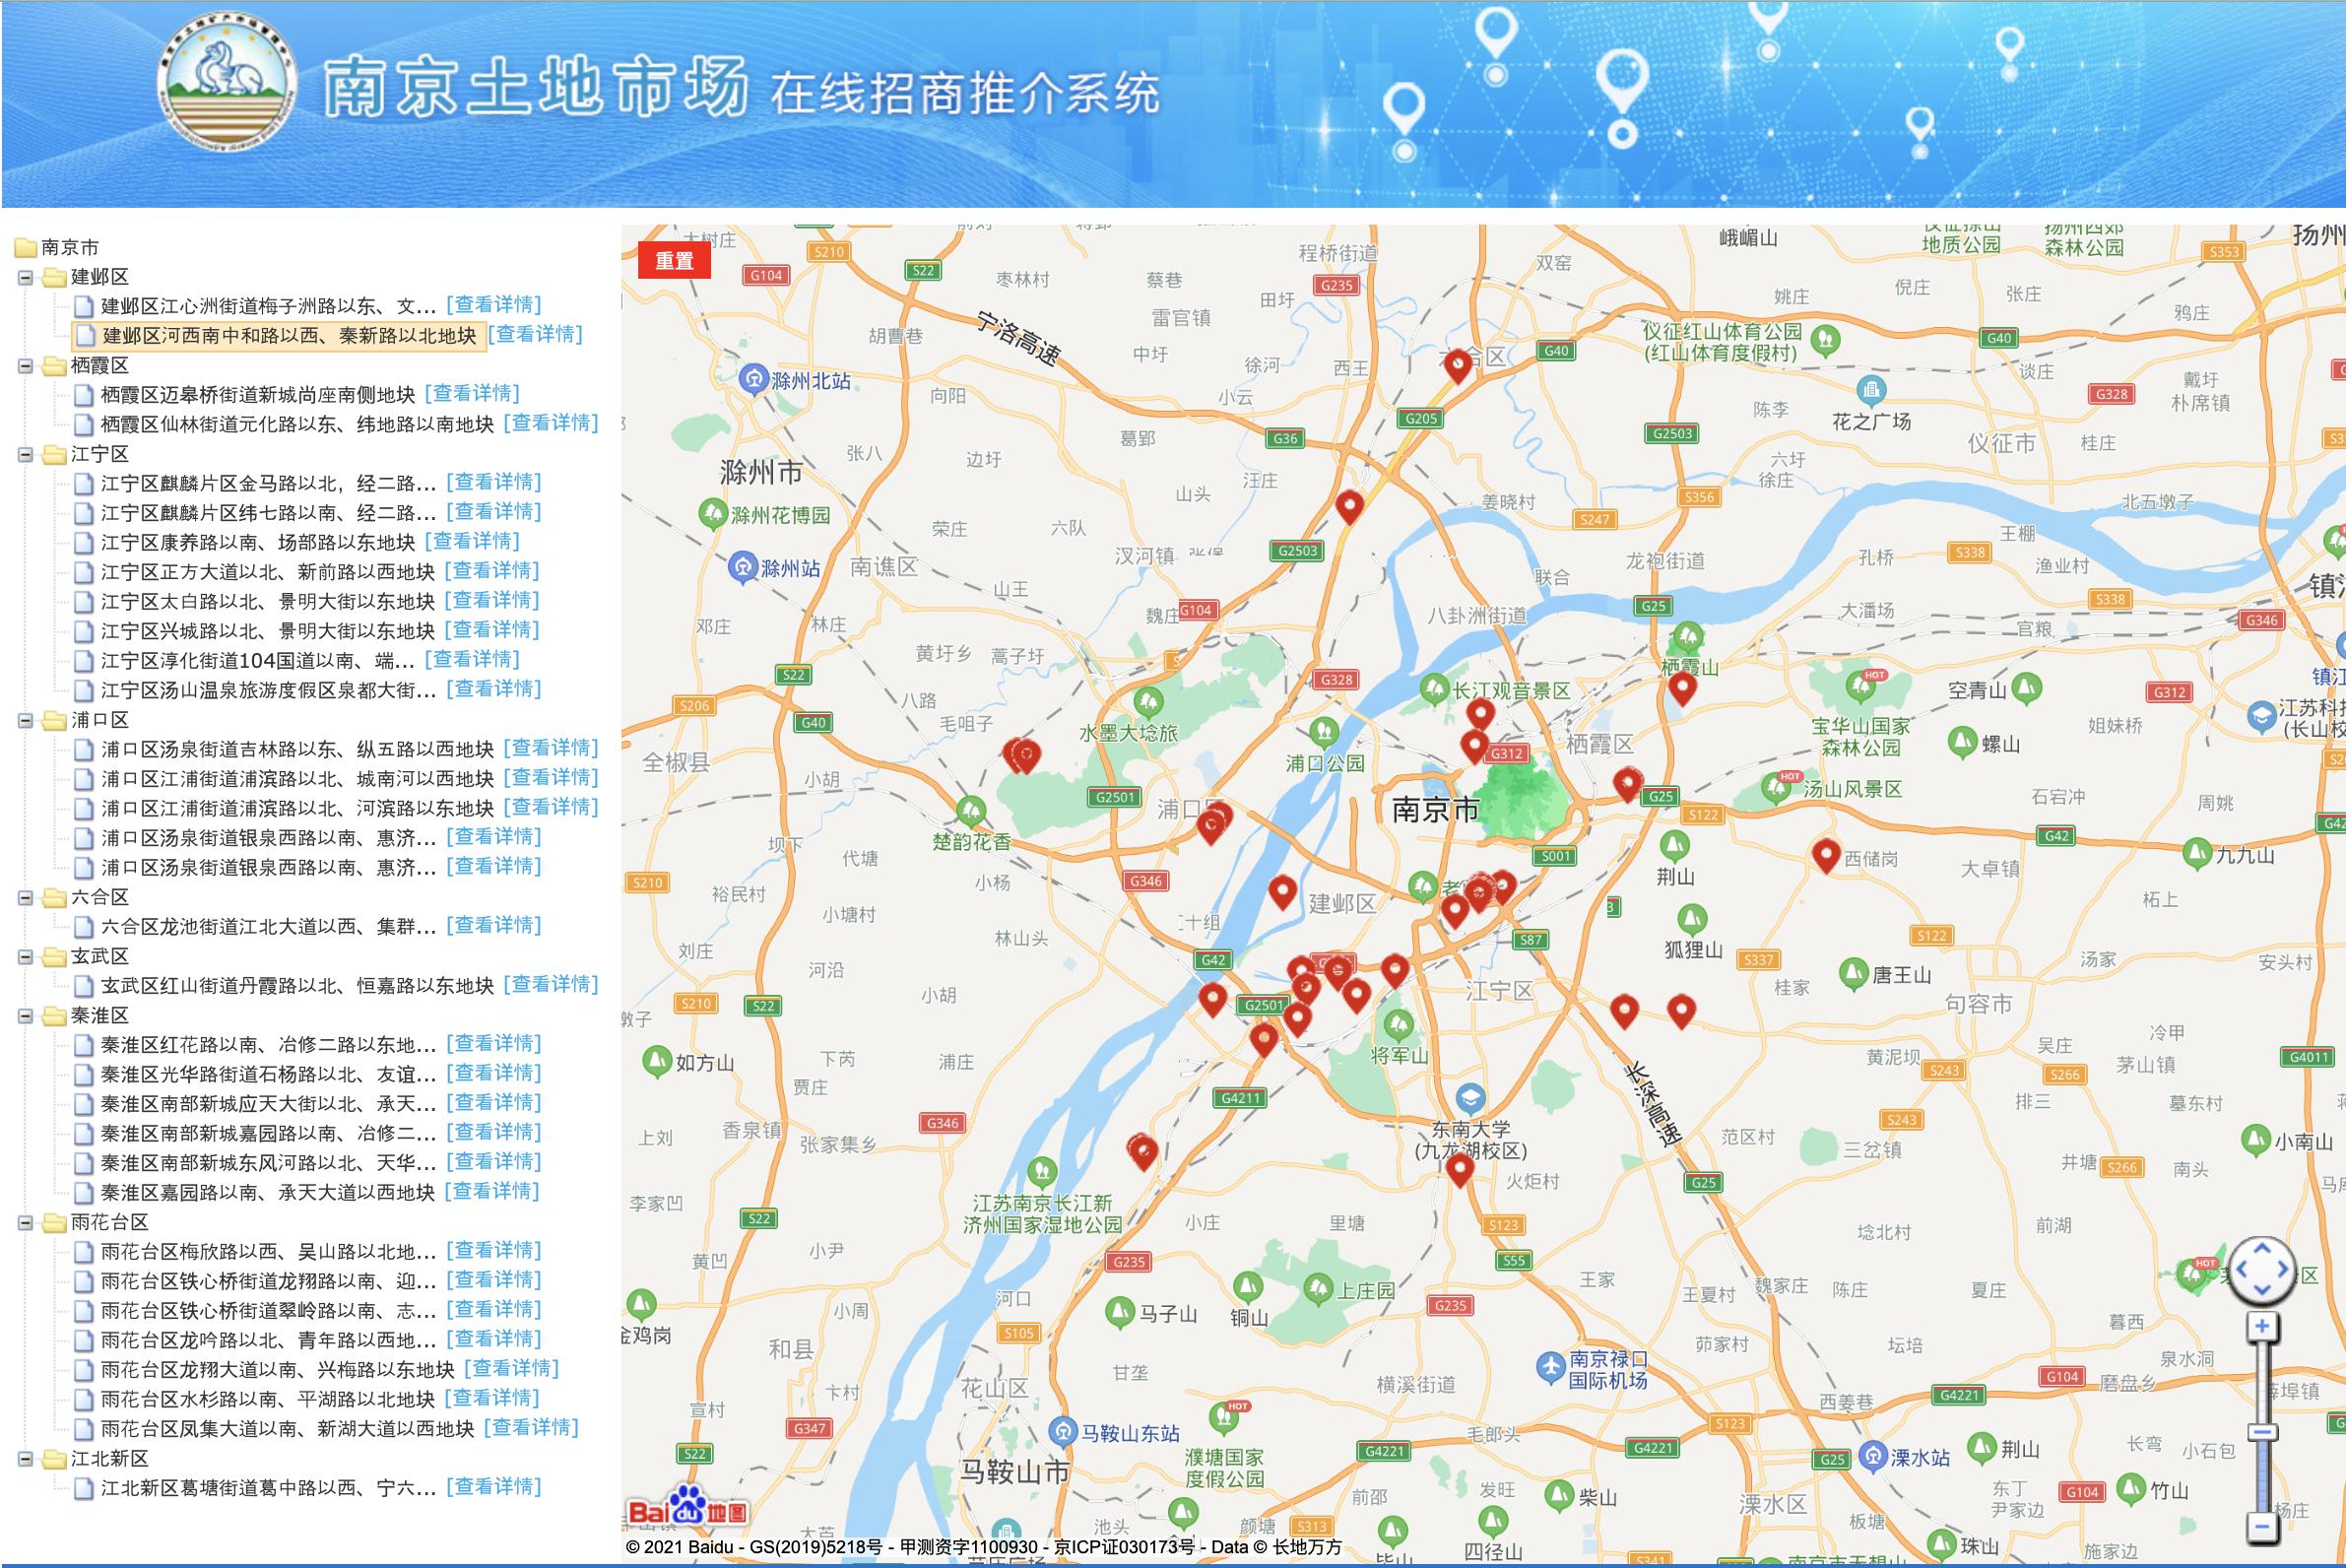 南京今年宅地分三批集中出让，33幅218公顷土地上线推介